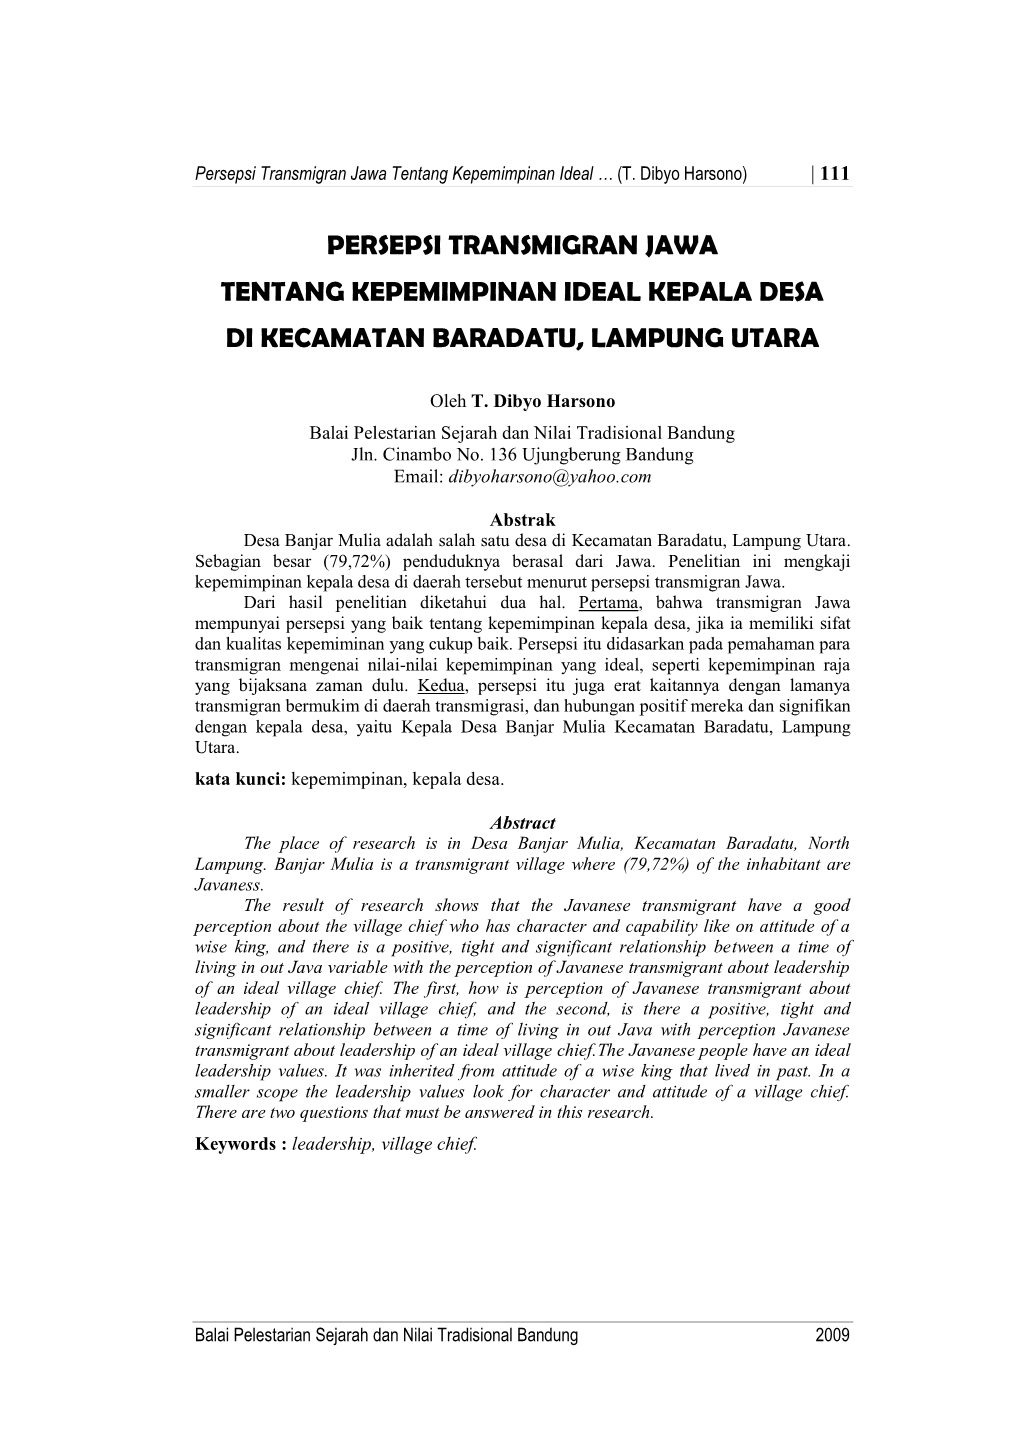 Persepsi Transmigran Jawa Tentang Kepemimpinan Ideal Kepala Desa Di